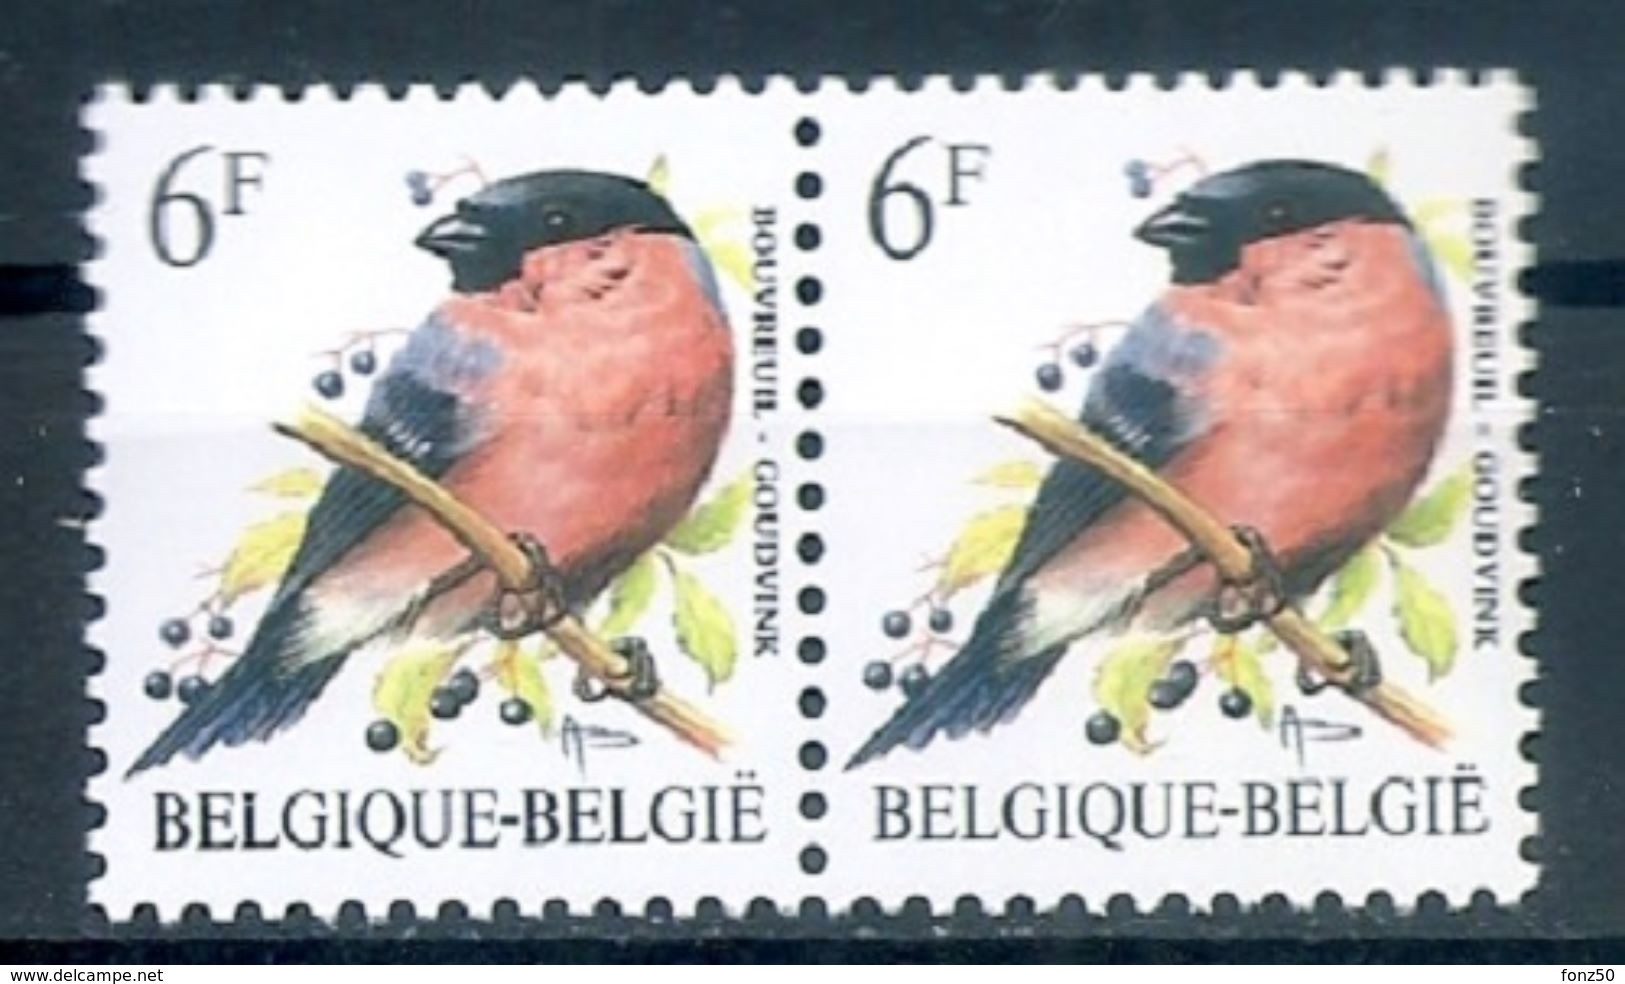 BELGIE * Buzin * Nr 2295 * Postfris Xx * WIT PAPIER - P6a - 1985-.. Oiseaux (Buzin)